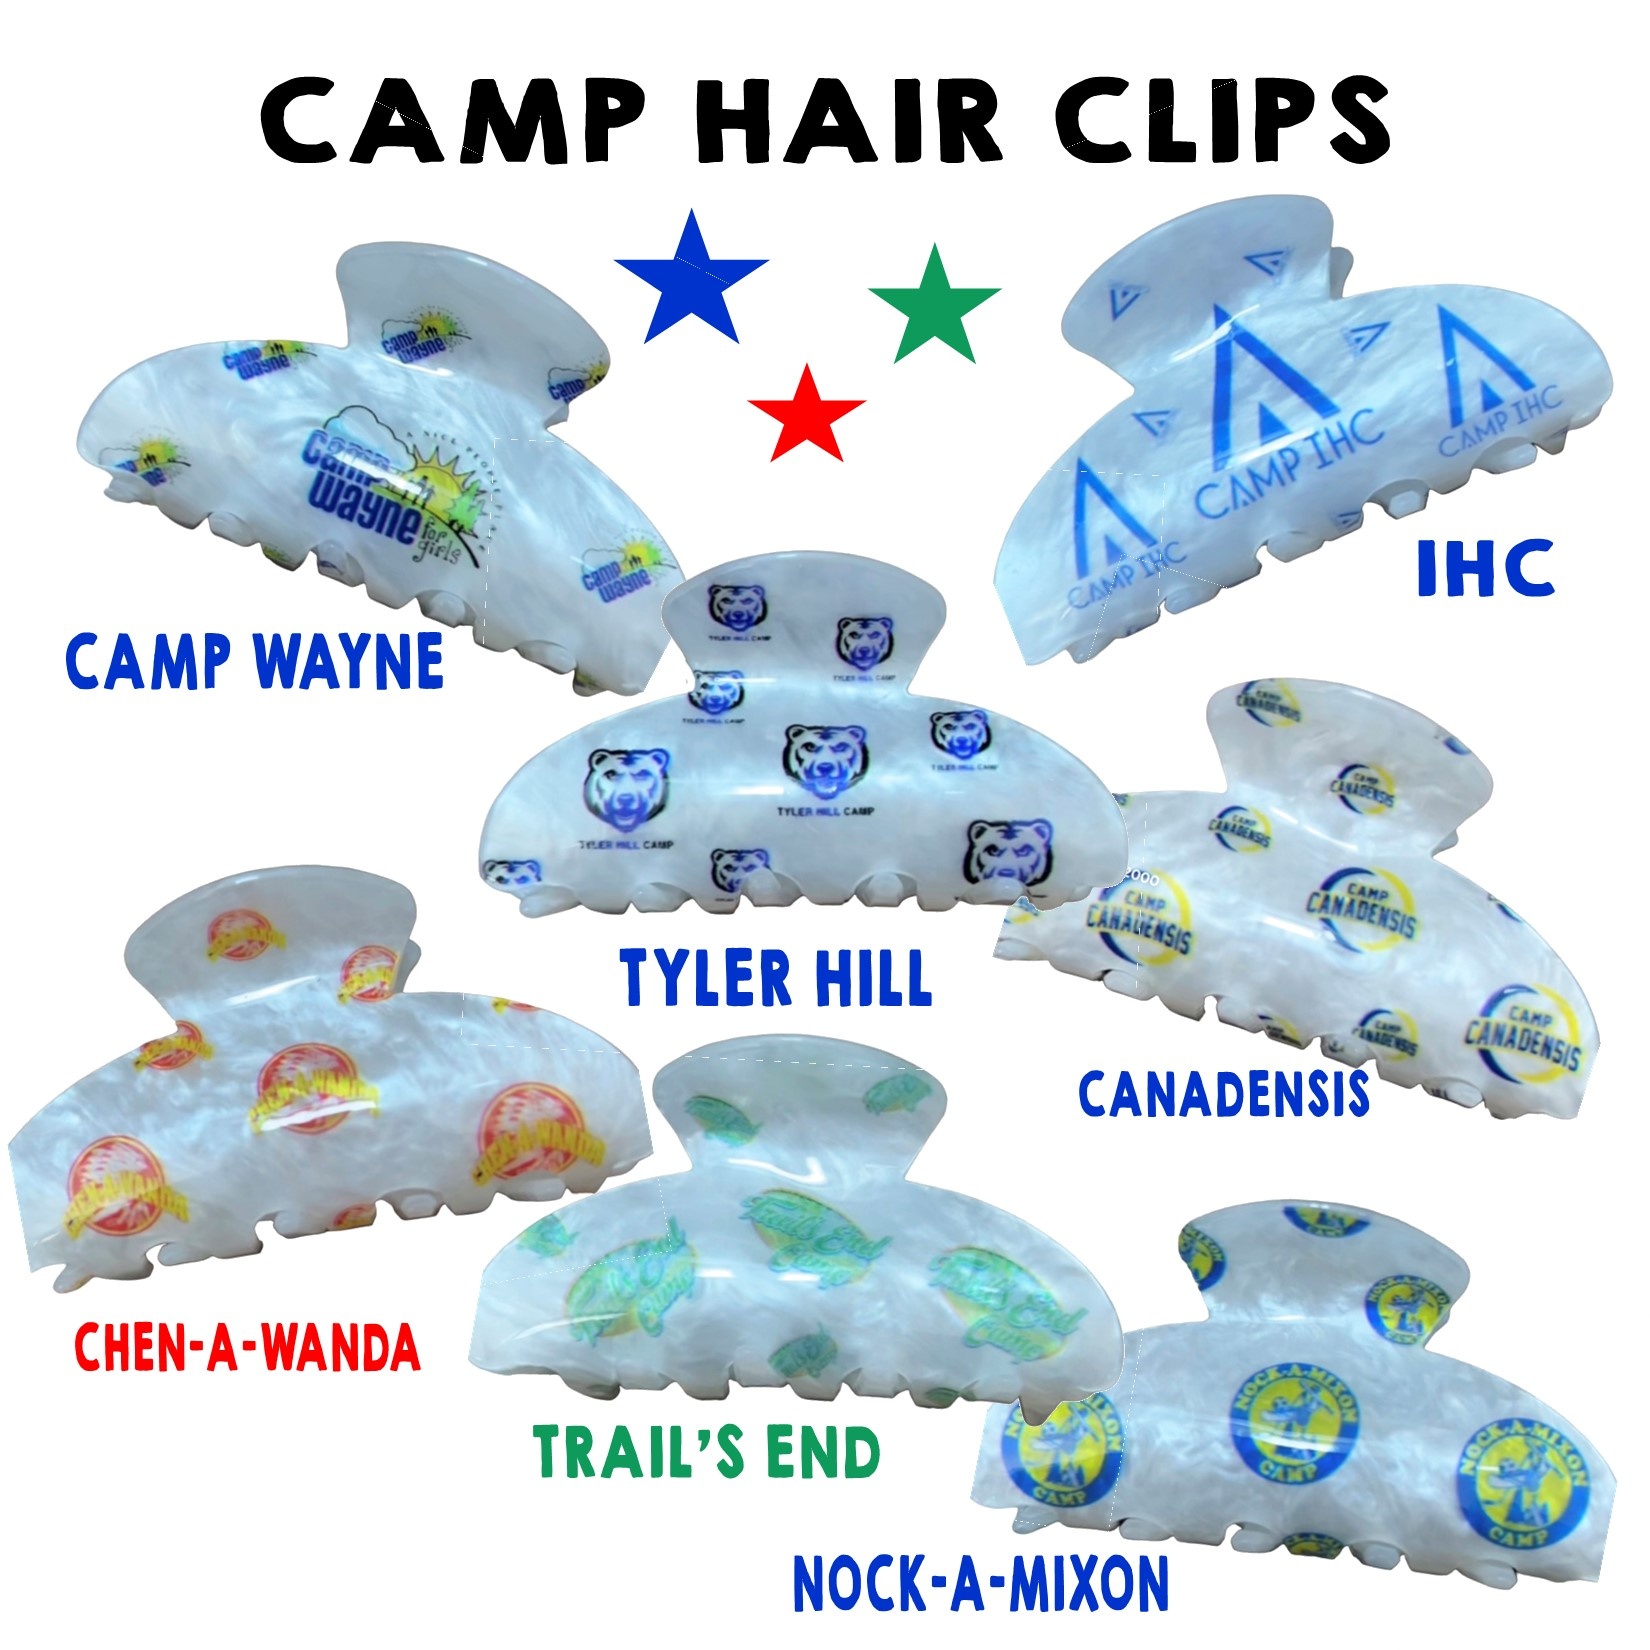 Camp Hair Clips